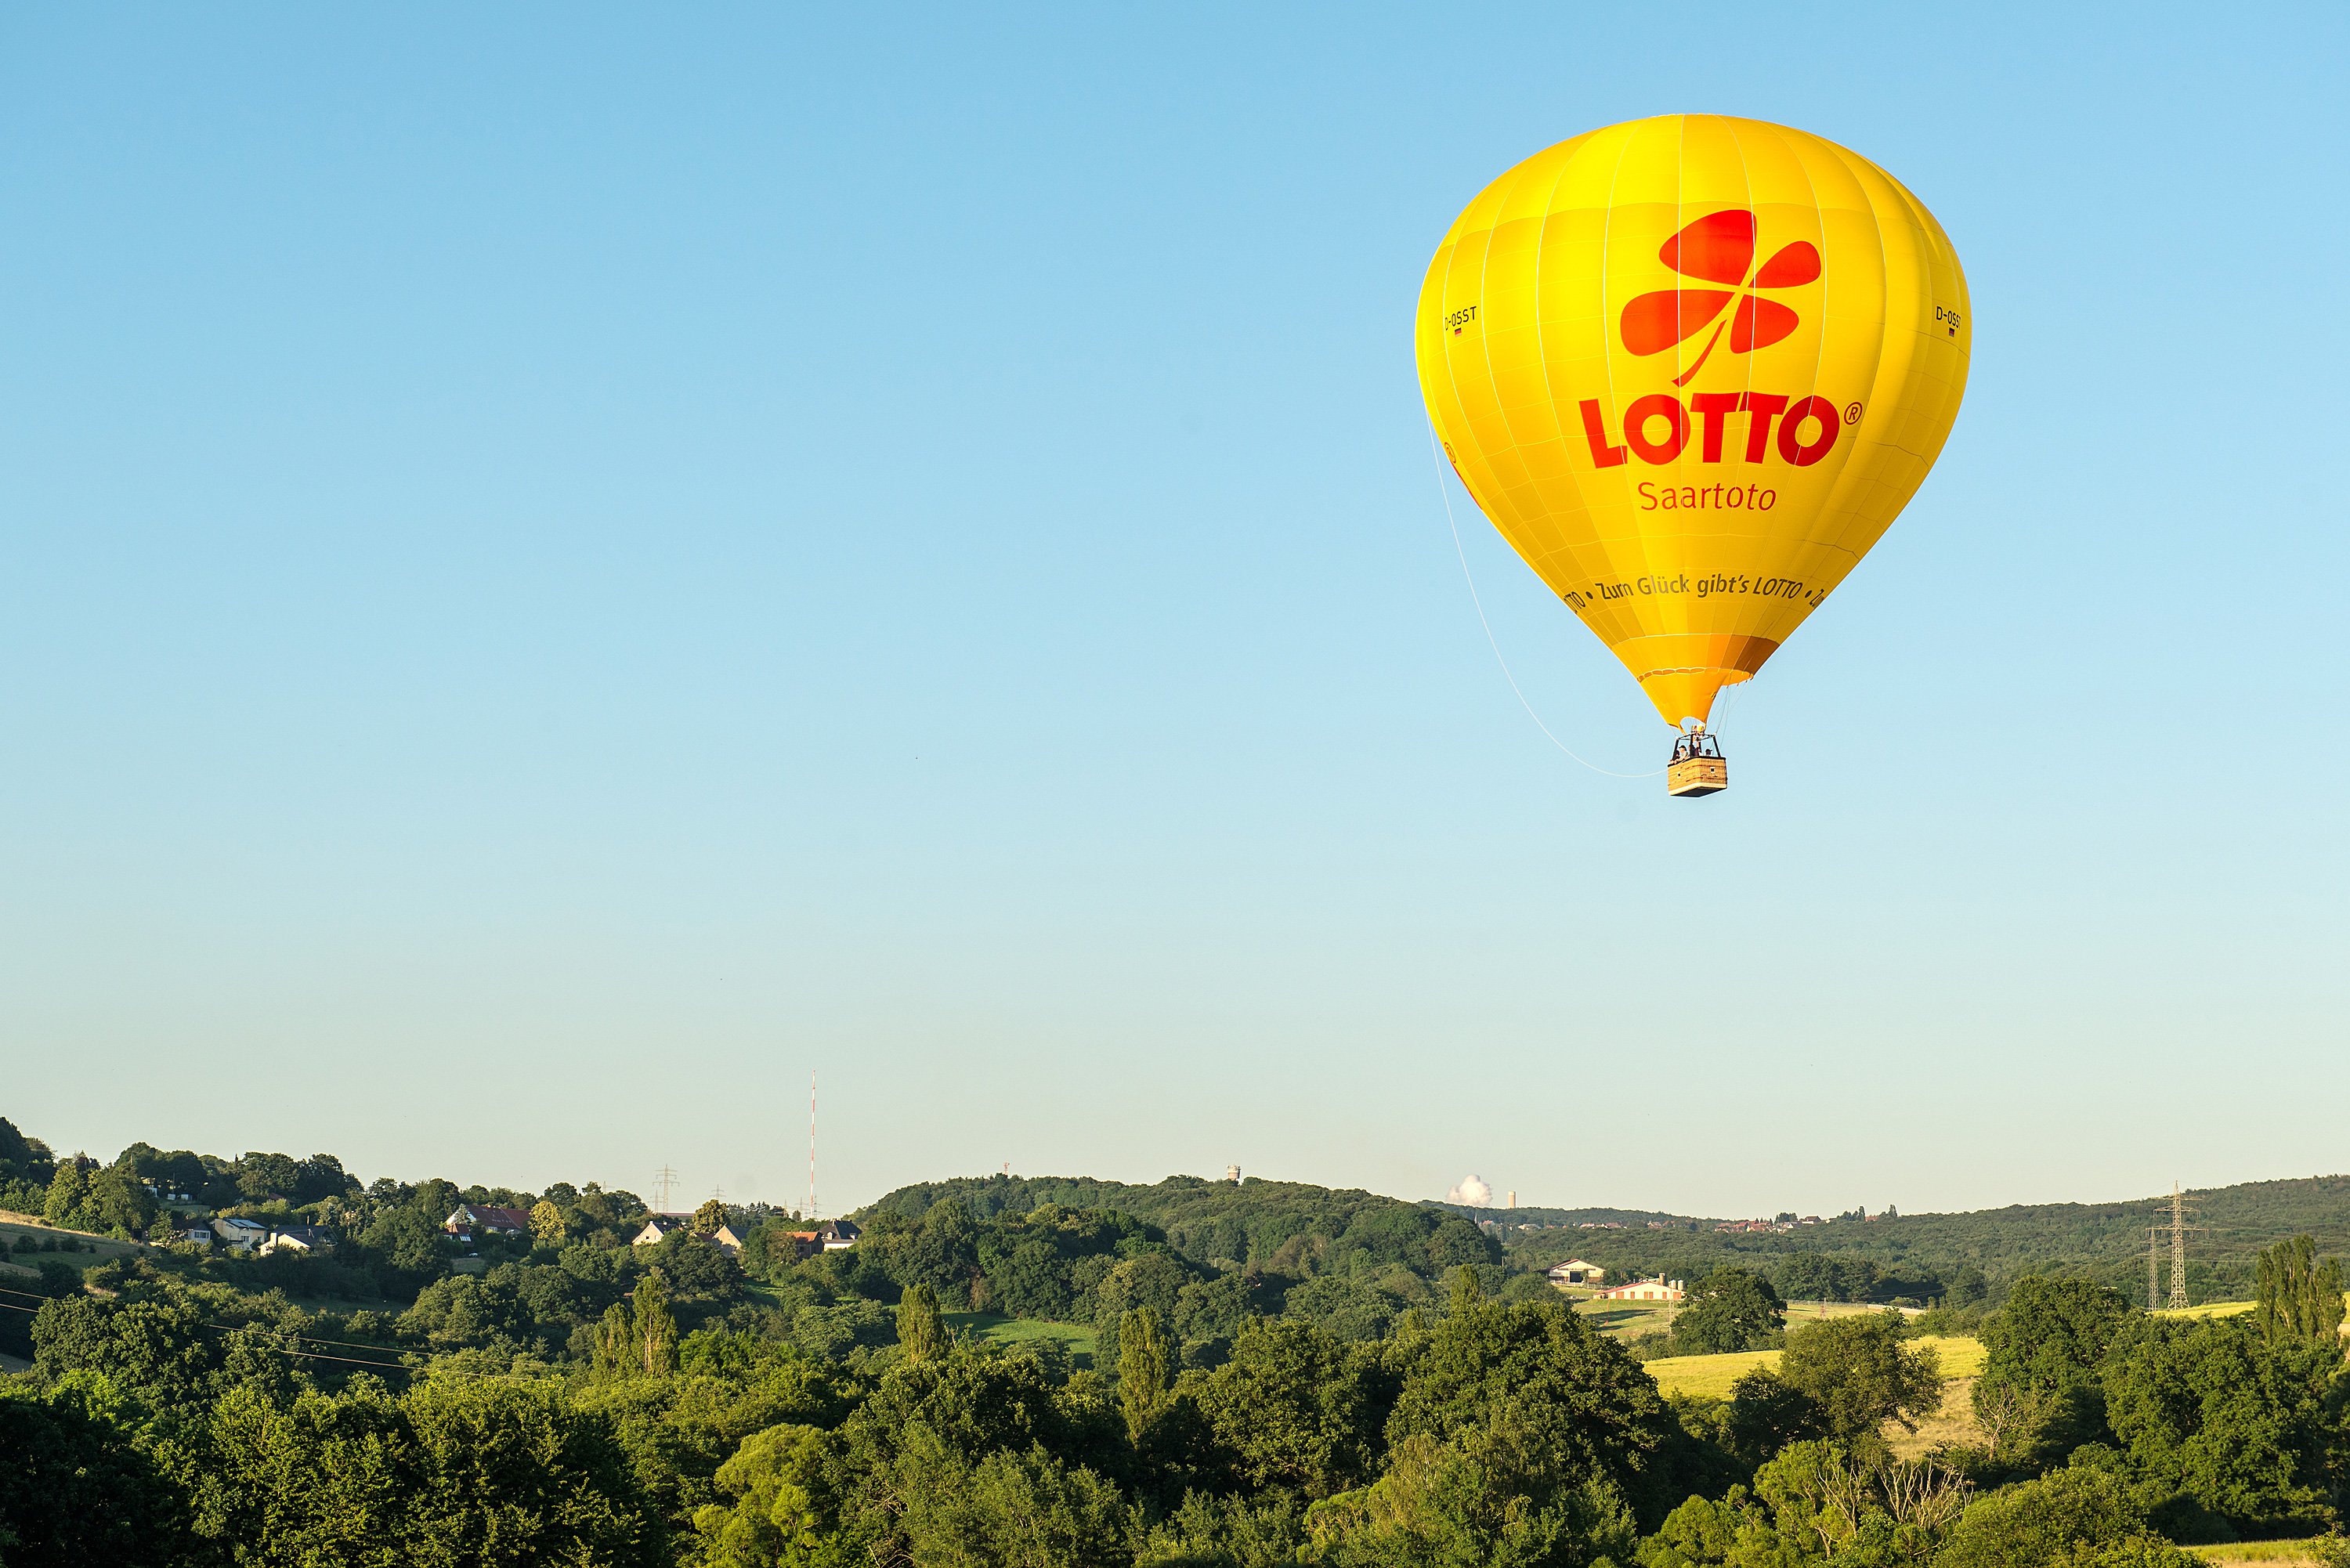 Heißluftballon von Saartoto vor blauem Himmel